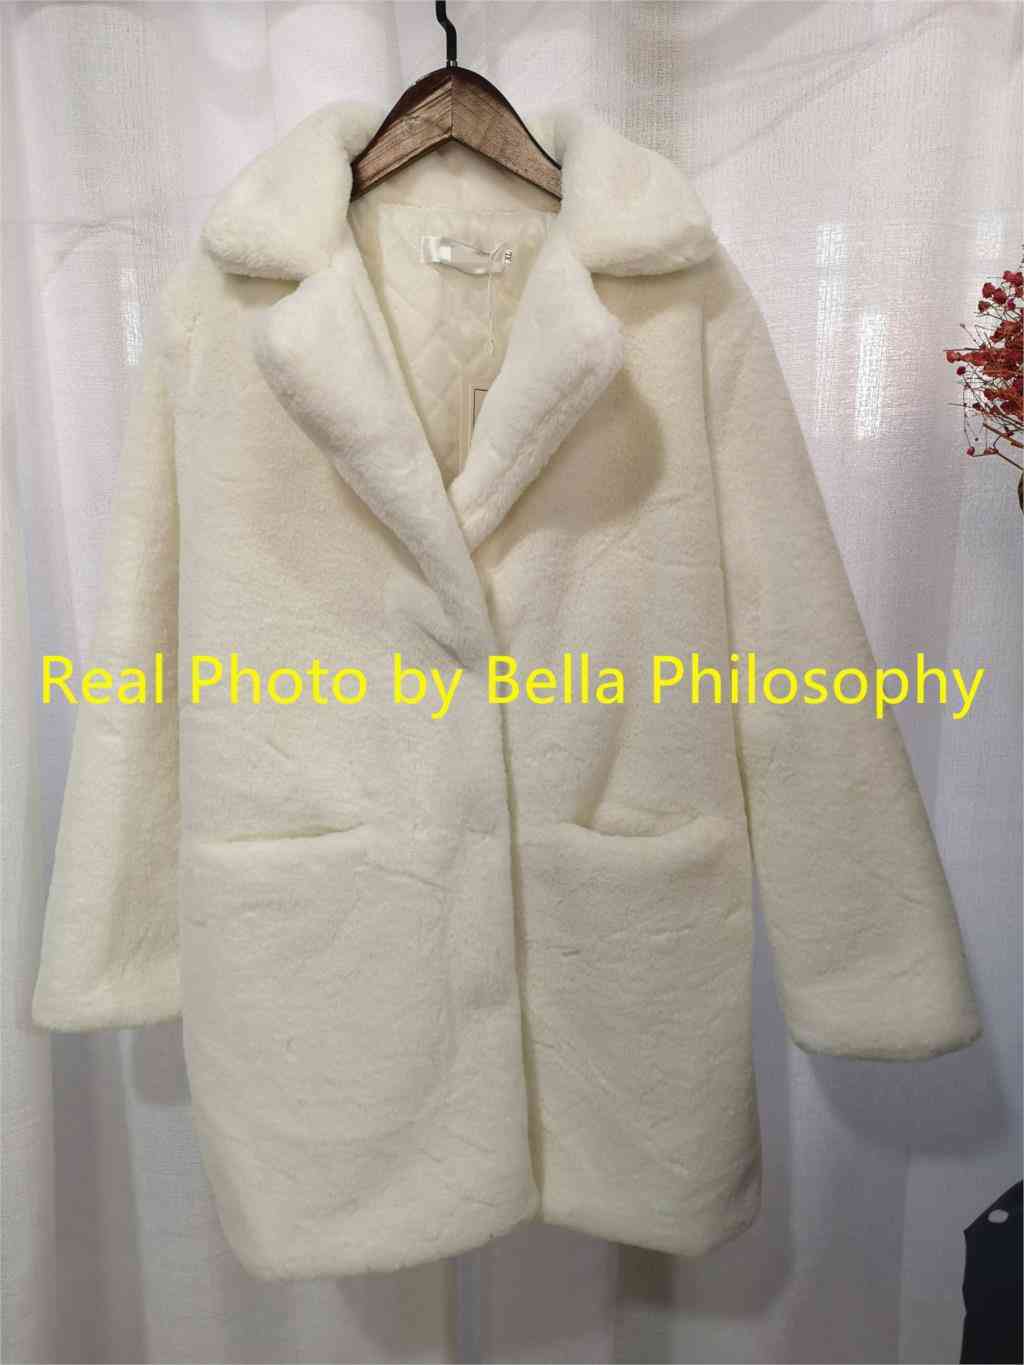 Women Mink Faux Fur Coat Solid Female Turn Down Collar Winter Warm Jacket